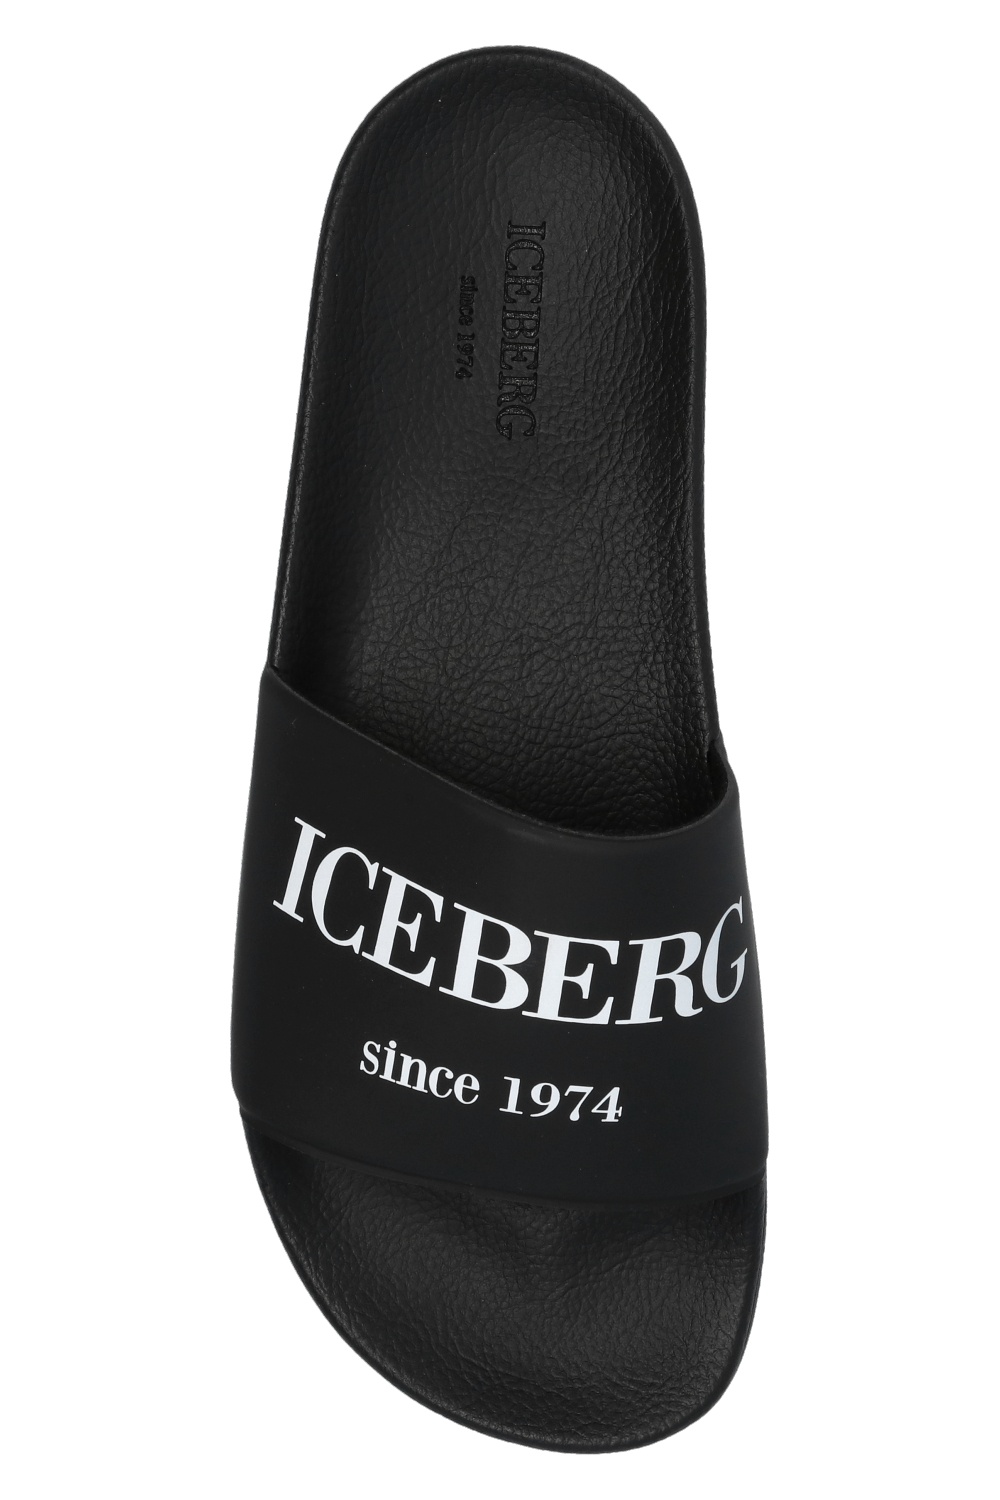 Iceberg tom ford toe cap low top sneakers item